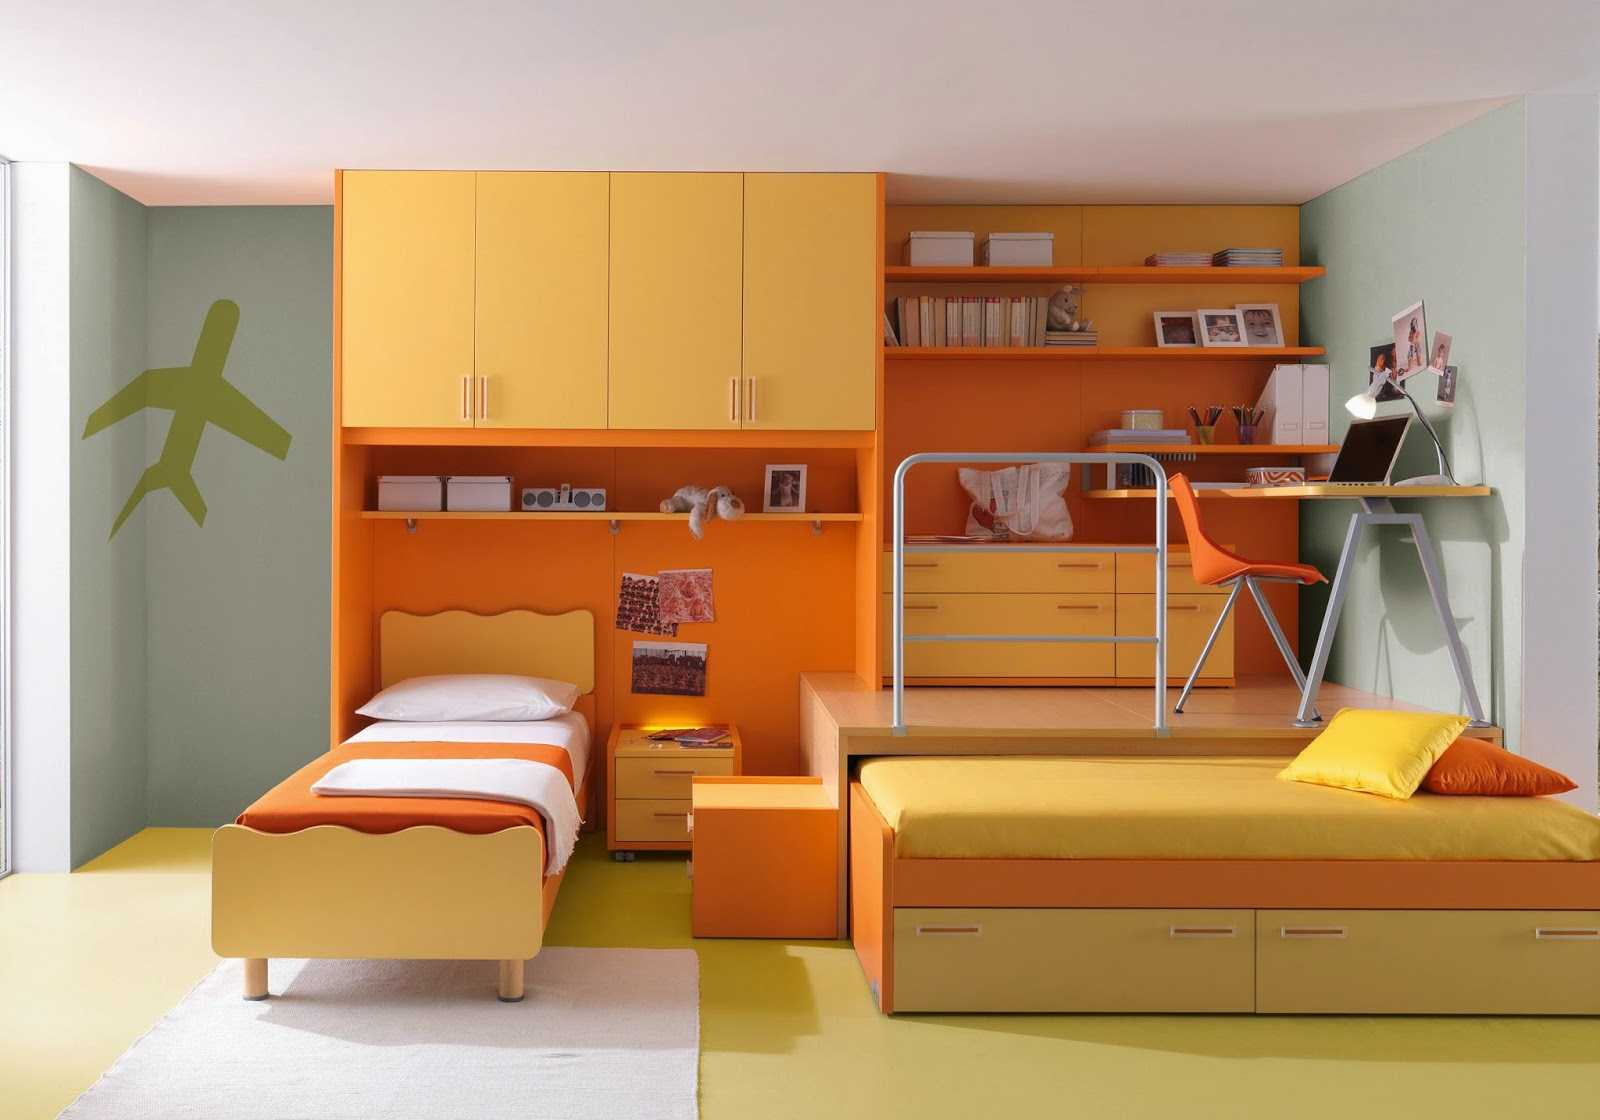 مزيج من البرتقالي الساطع في المناطق الداخلية من المنزل مع الألوان الأخرى